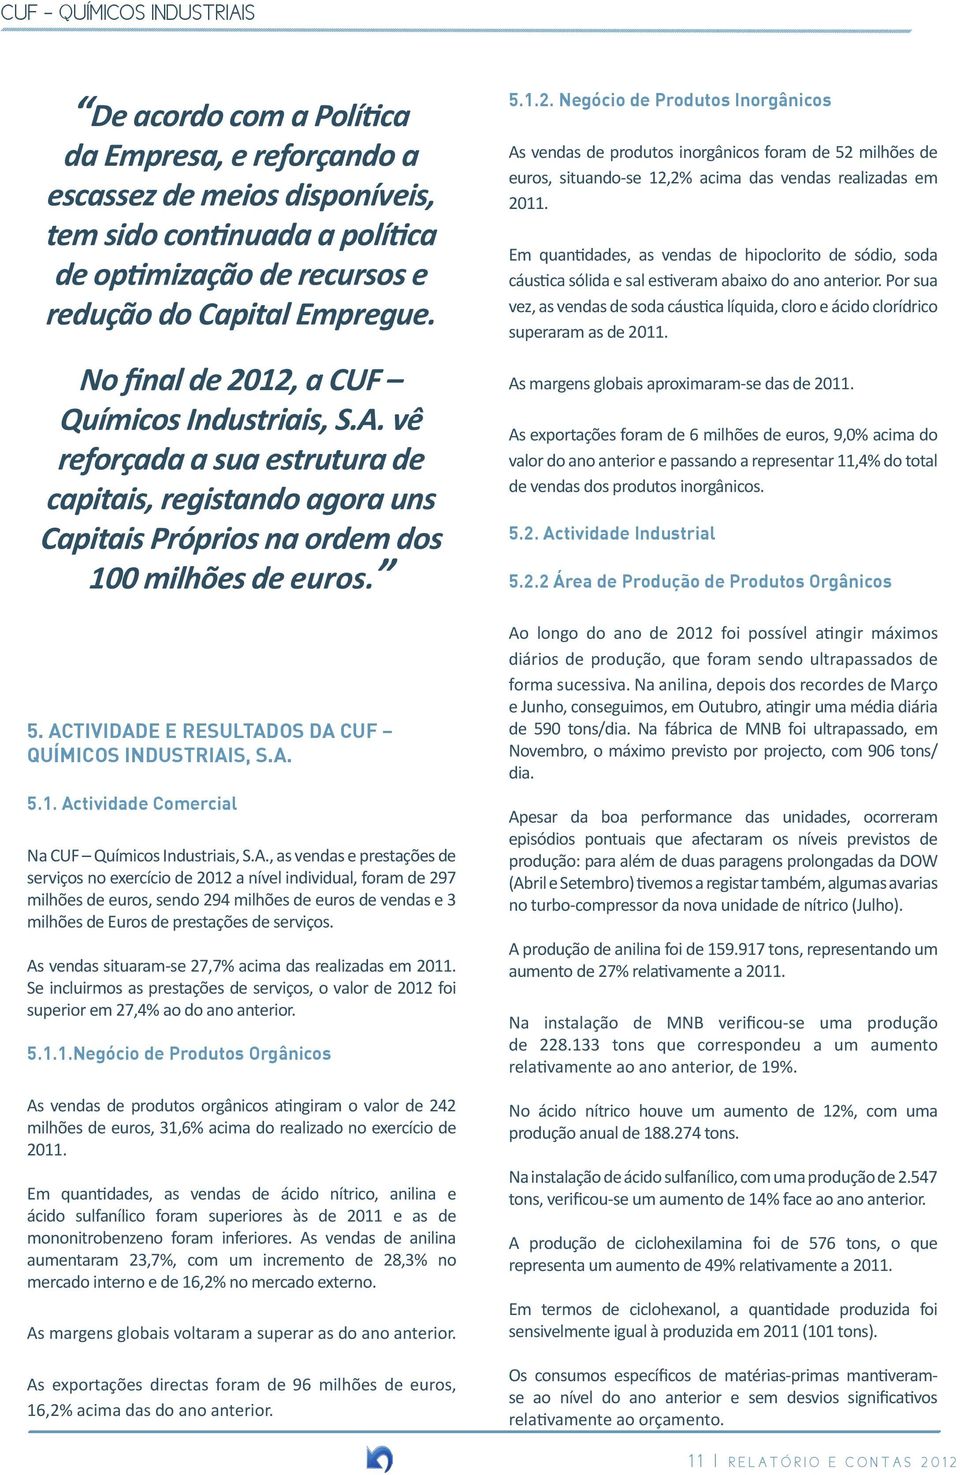 ACTIVIDADE E RESULTADOS DA CUF QUÍMICOS INDUSTRIAIS, S.A. 5.1. Actividade Comercial Na CUF Químicos Industriais, S.A., as vendas e prestações de serviços no exercício de 2012 a nível individual, foram de 297 milhões de euros, sendo 294 milhões de euros de vendas e 3 milhões de Euros de prestações de serviços.